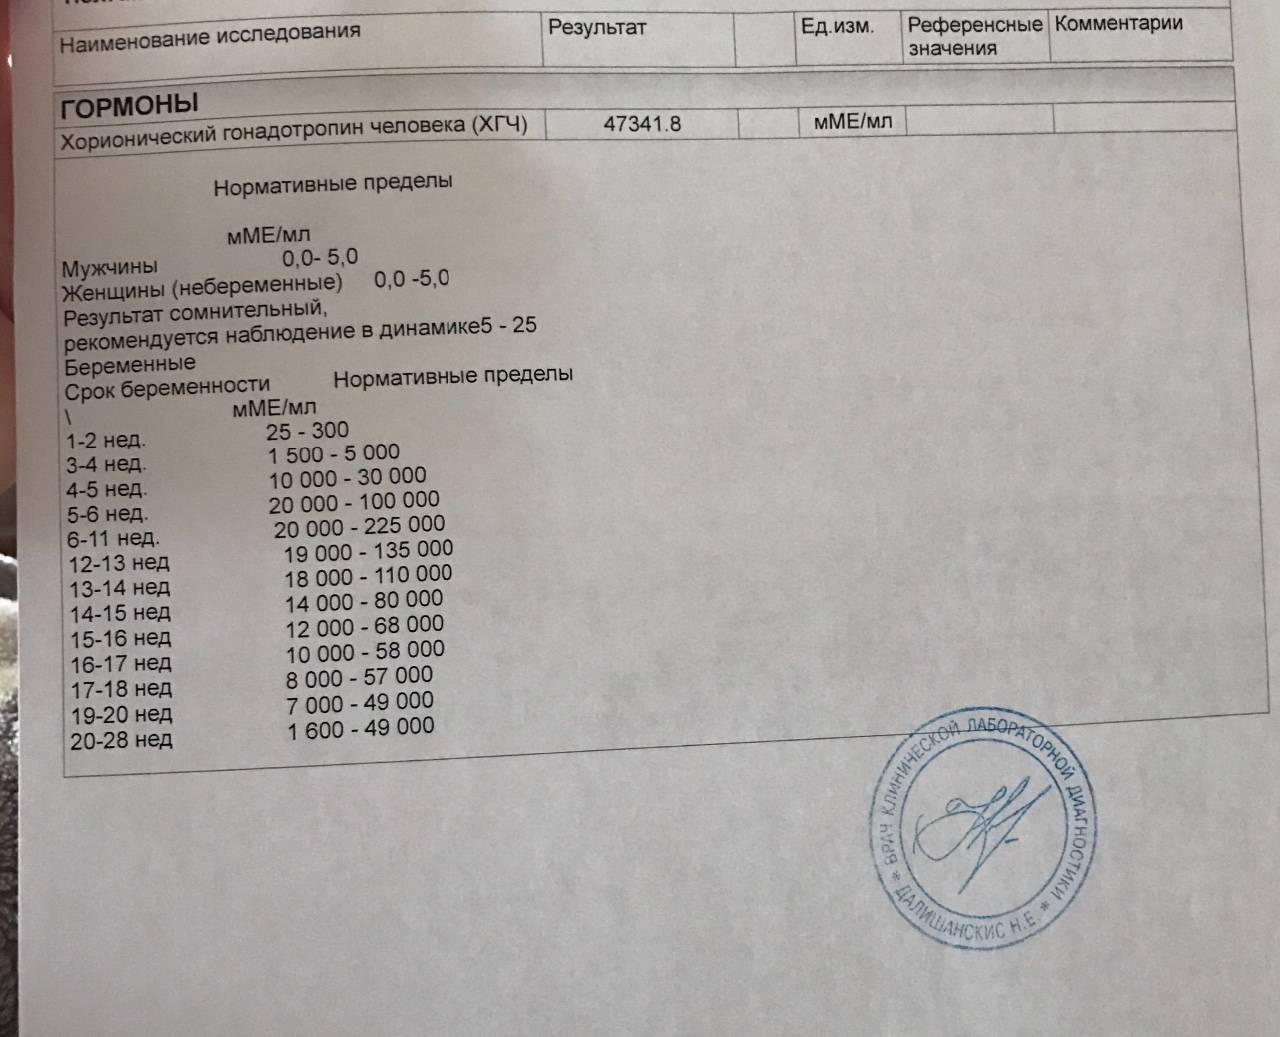 Анализ крови на хгч в москве - сеть клиник семейный доктор